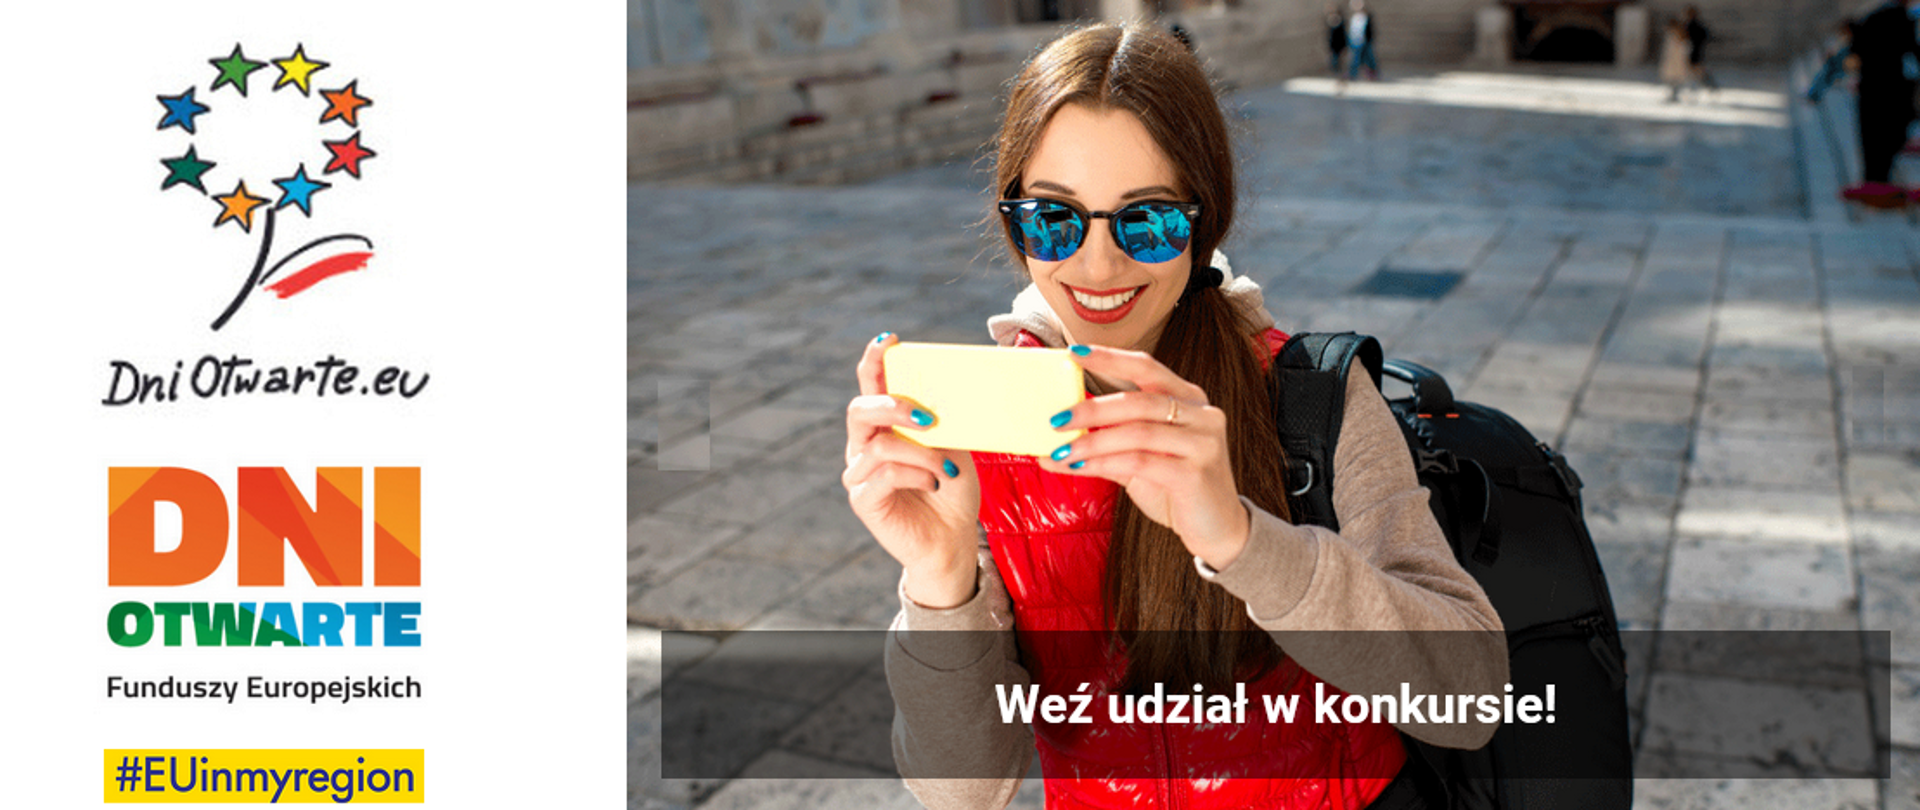 Baner - po lewej logo DOFE oraz hasztag EUinmyregion, po prawej fotografia młodej kobiety w okularach przeciwsłonecznych wykonującej zdjęcie smartfonem i hasło Weź udział w konkursie